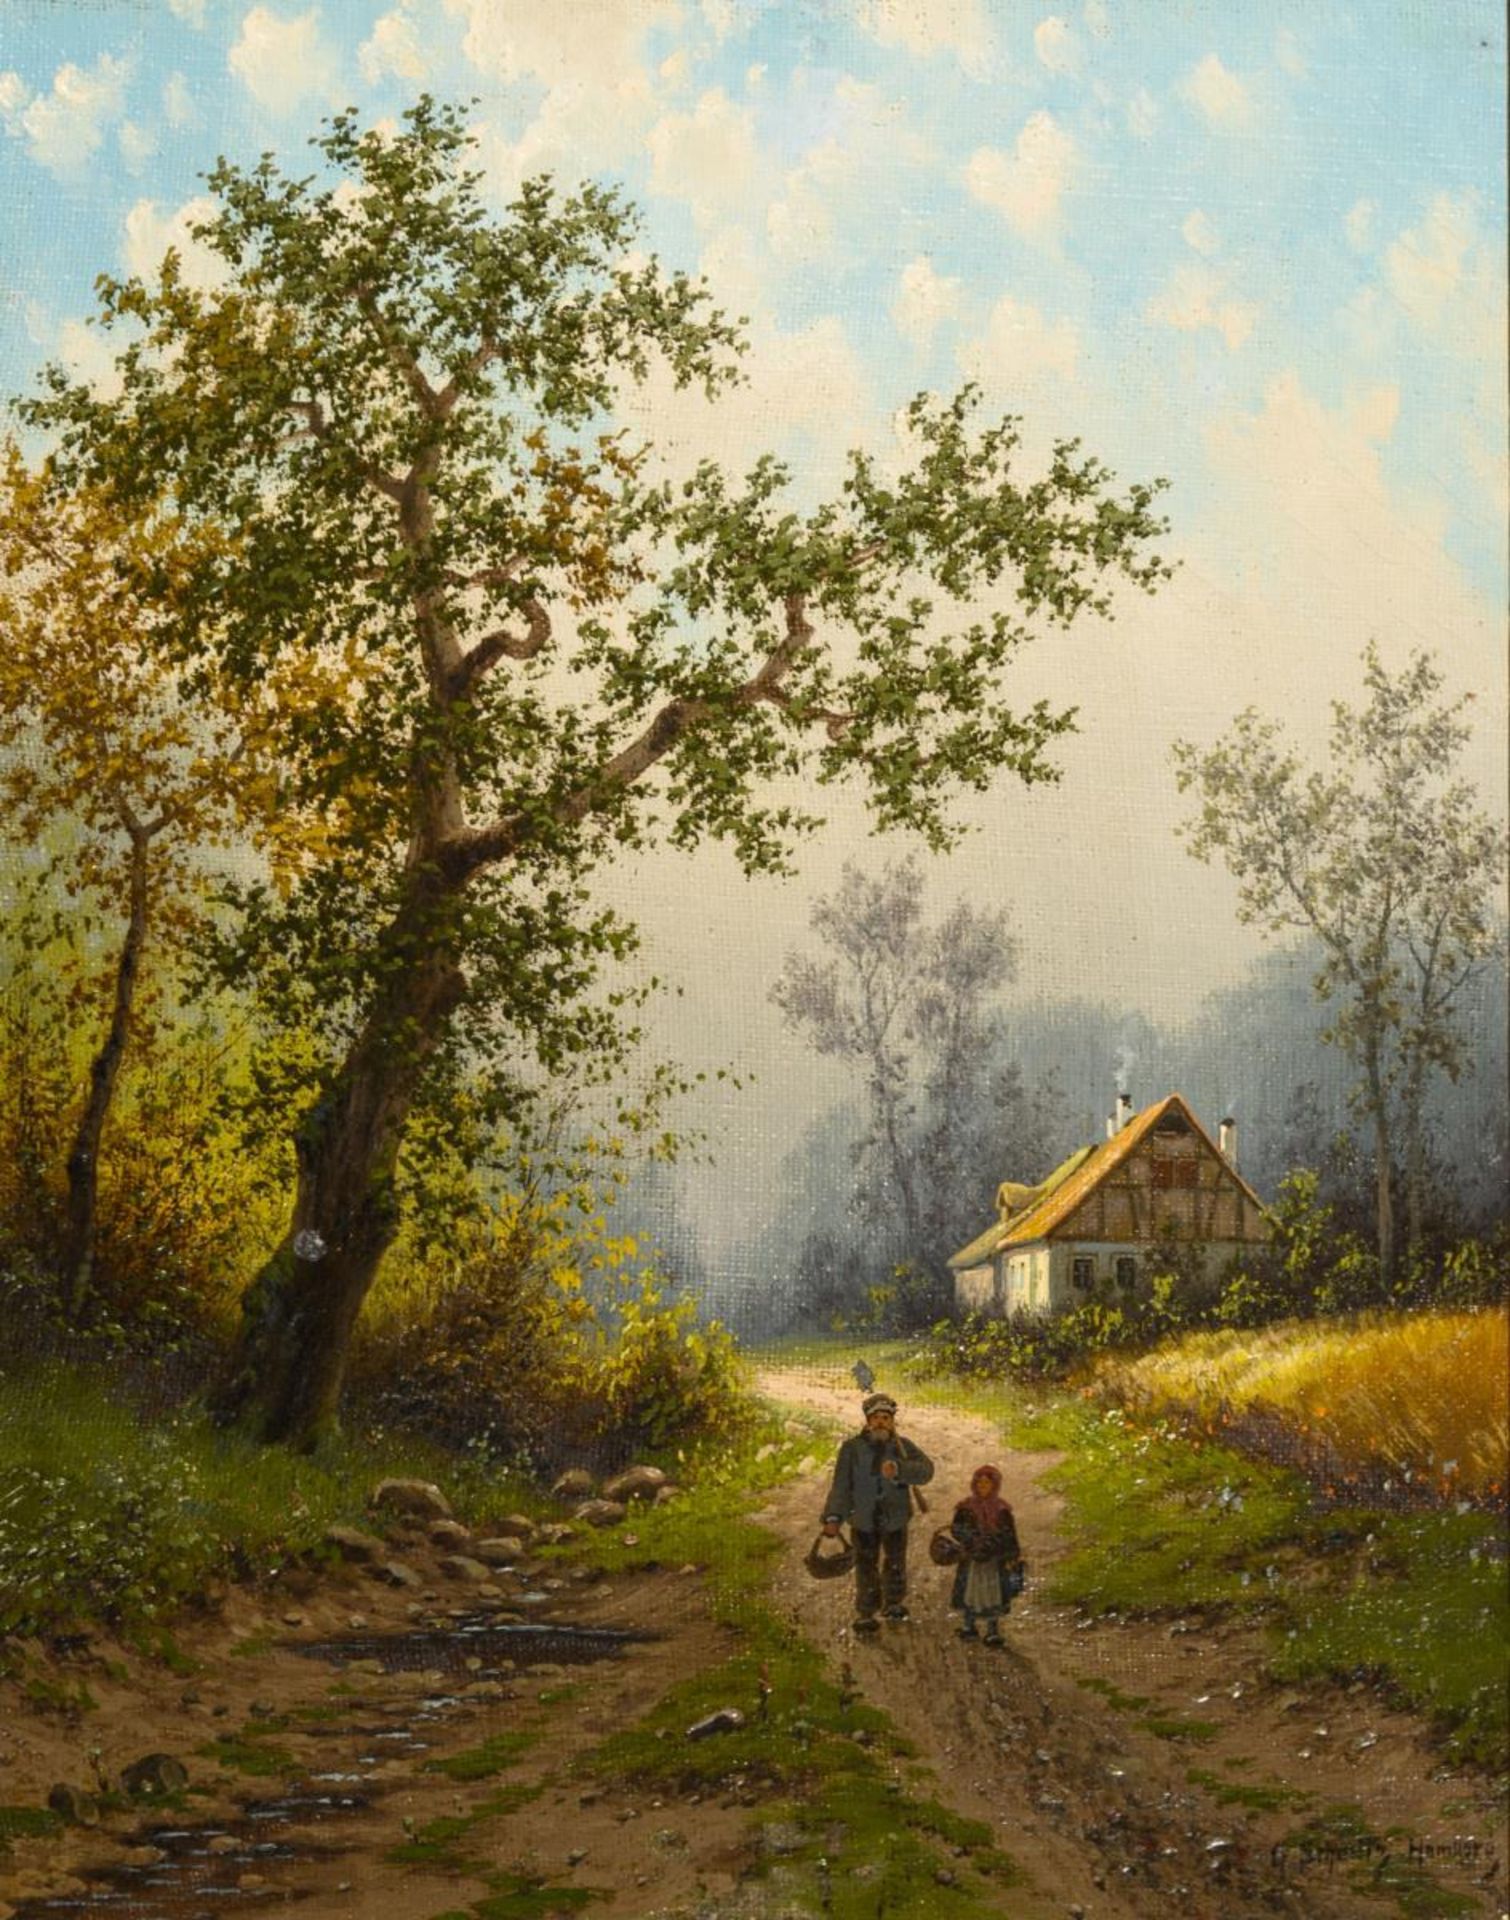 SCHMITZ-HAMBURG, Georg (1851 Düsseldorf - 1917 Hamburg). "Westfälische Landschaft".